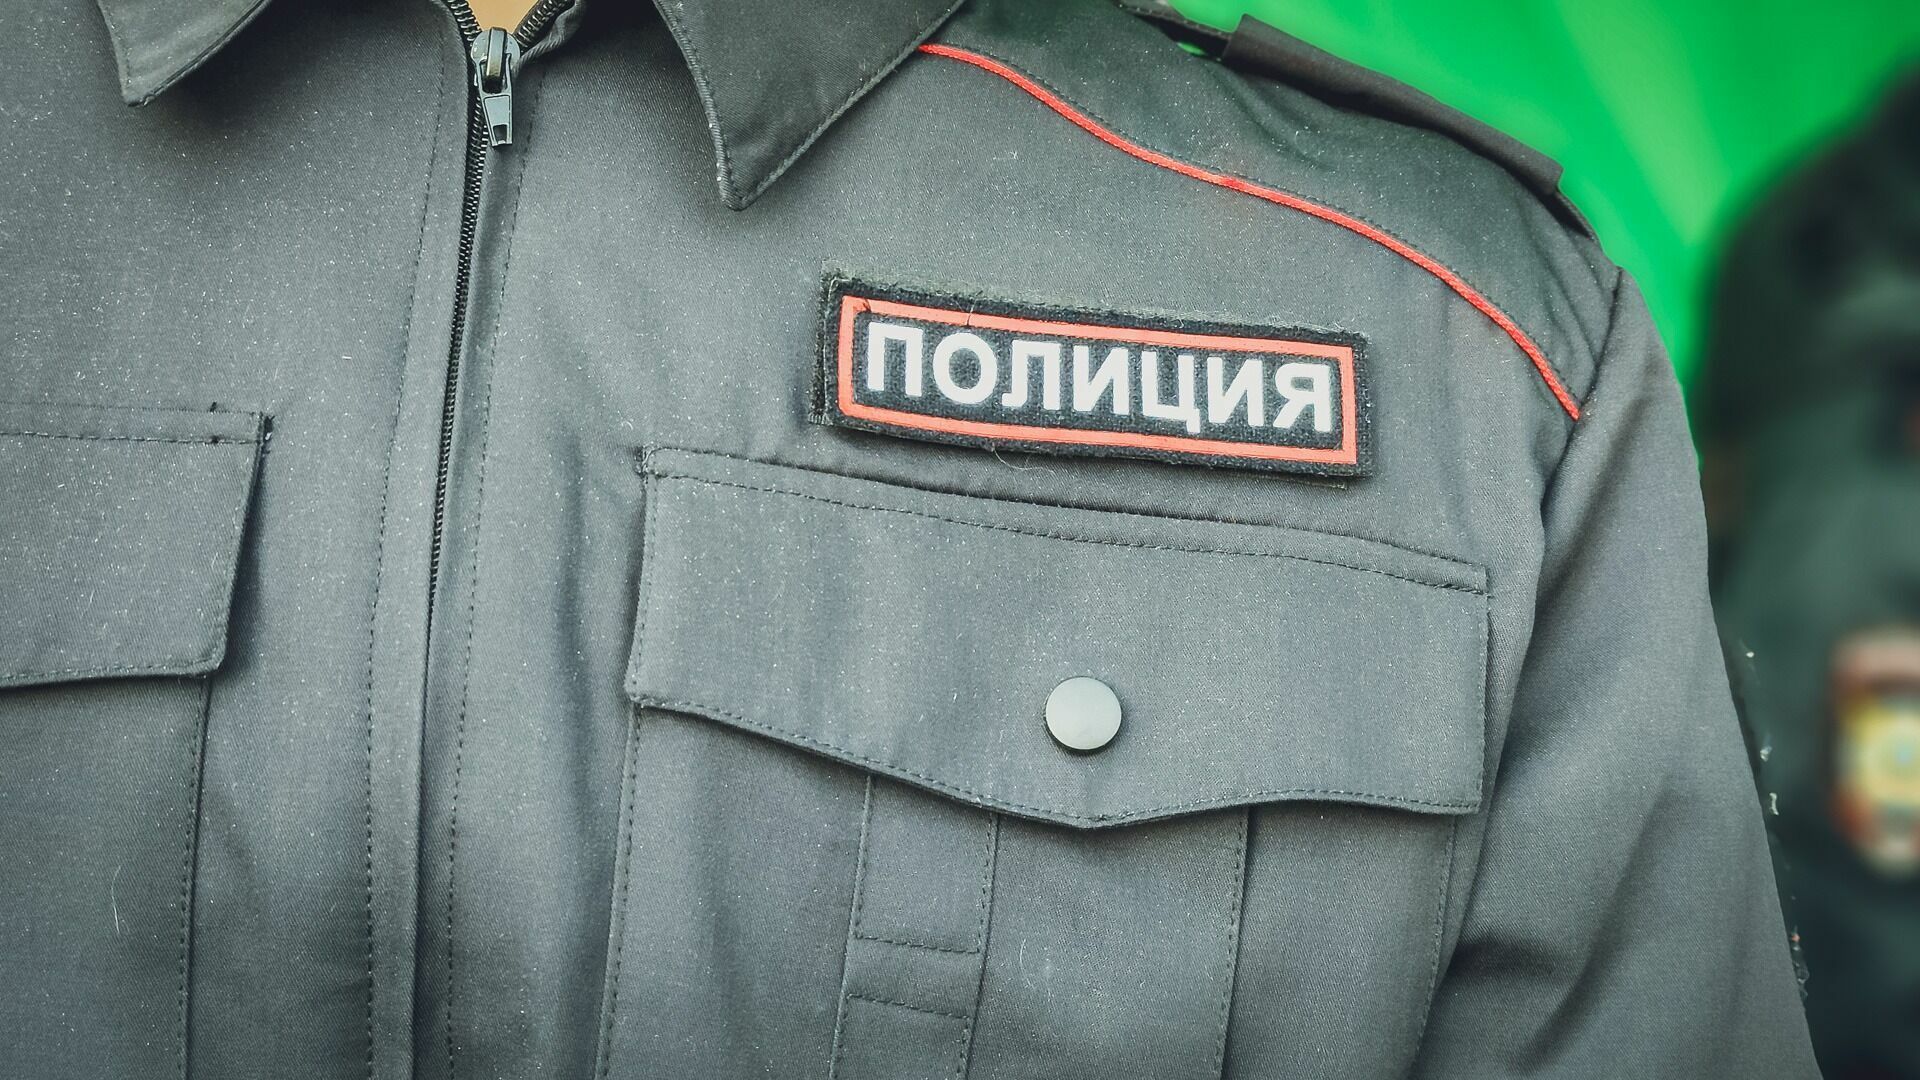 Полицейского будут судить за нападение на девочку в Новосибирске